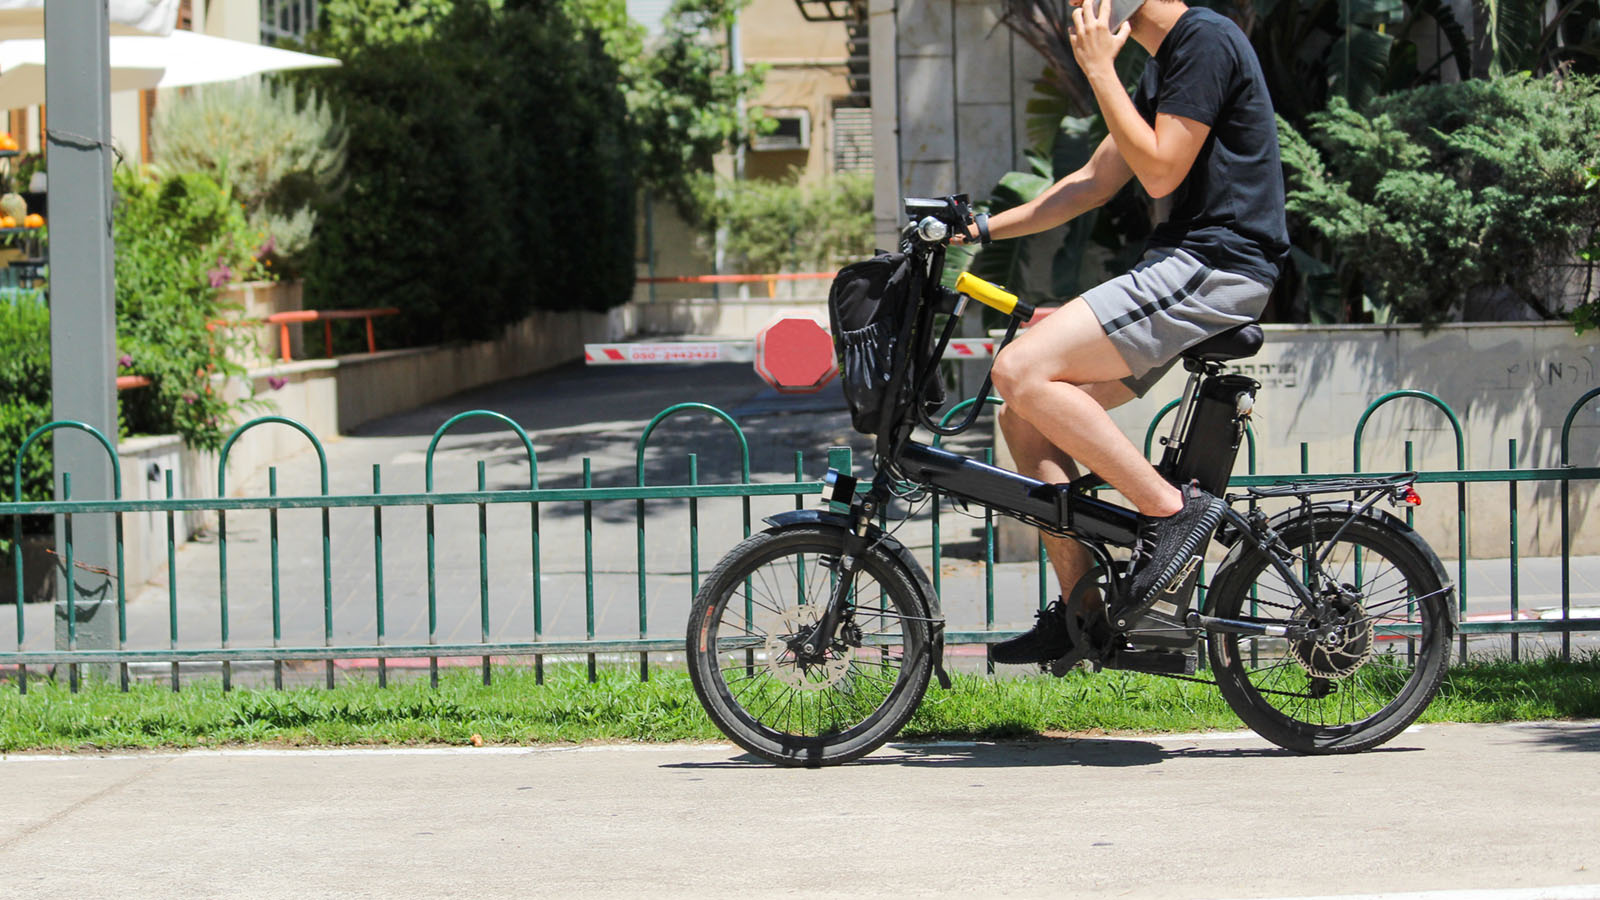 נוסע על אופניים חשמליים (צילום: shutterstock).